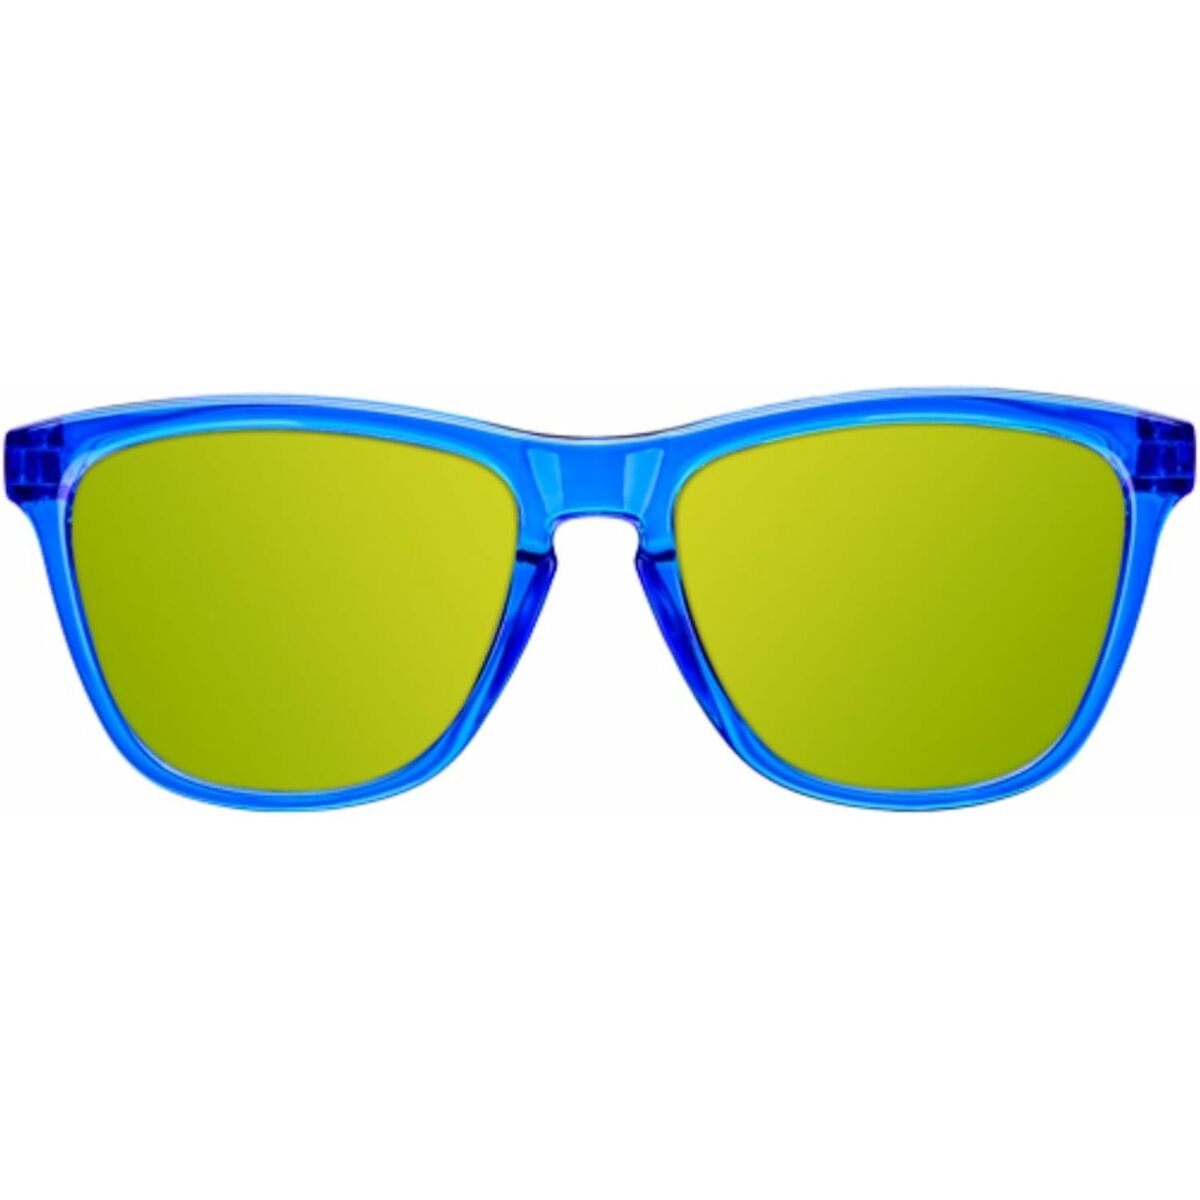 Kindersonnenbrille Northweek Kids Bright Ø 47 mm grün Blau